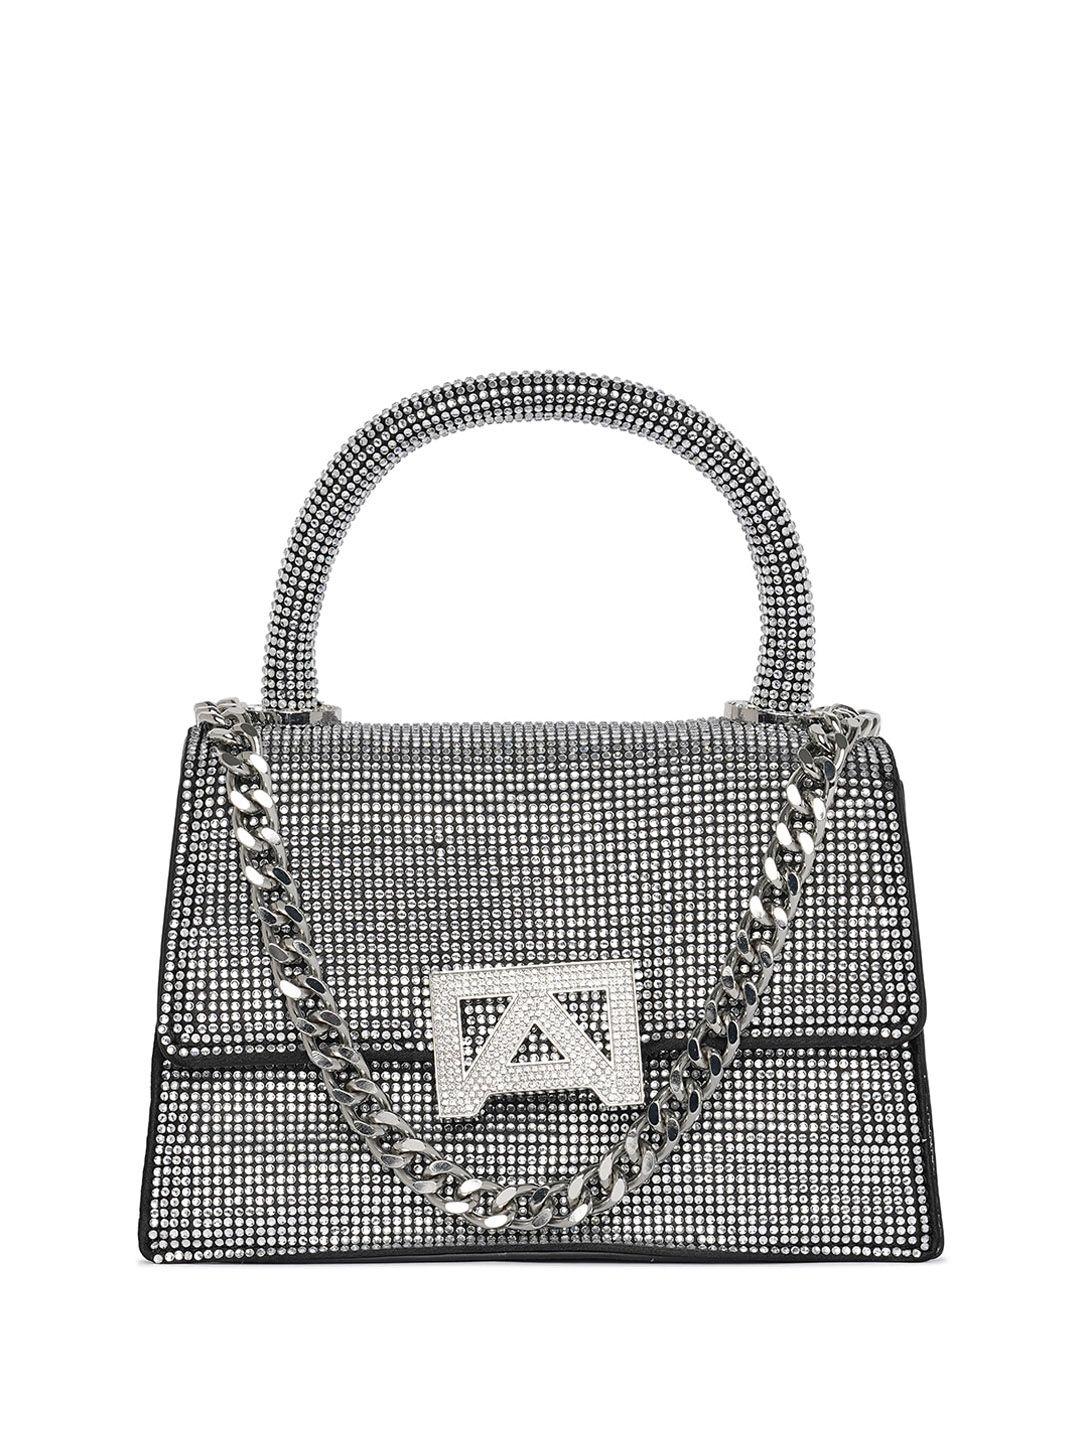 aldo embellished structured satchel bag